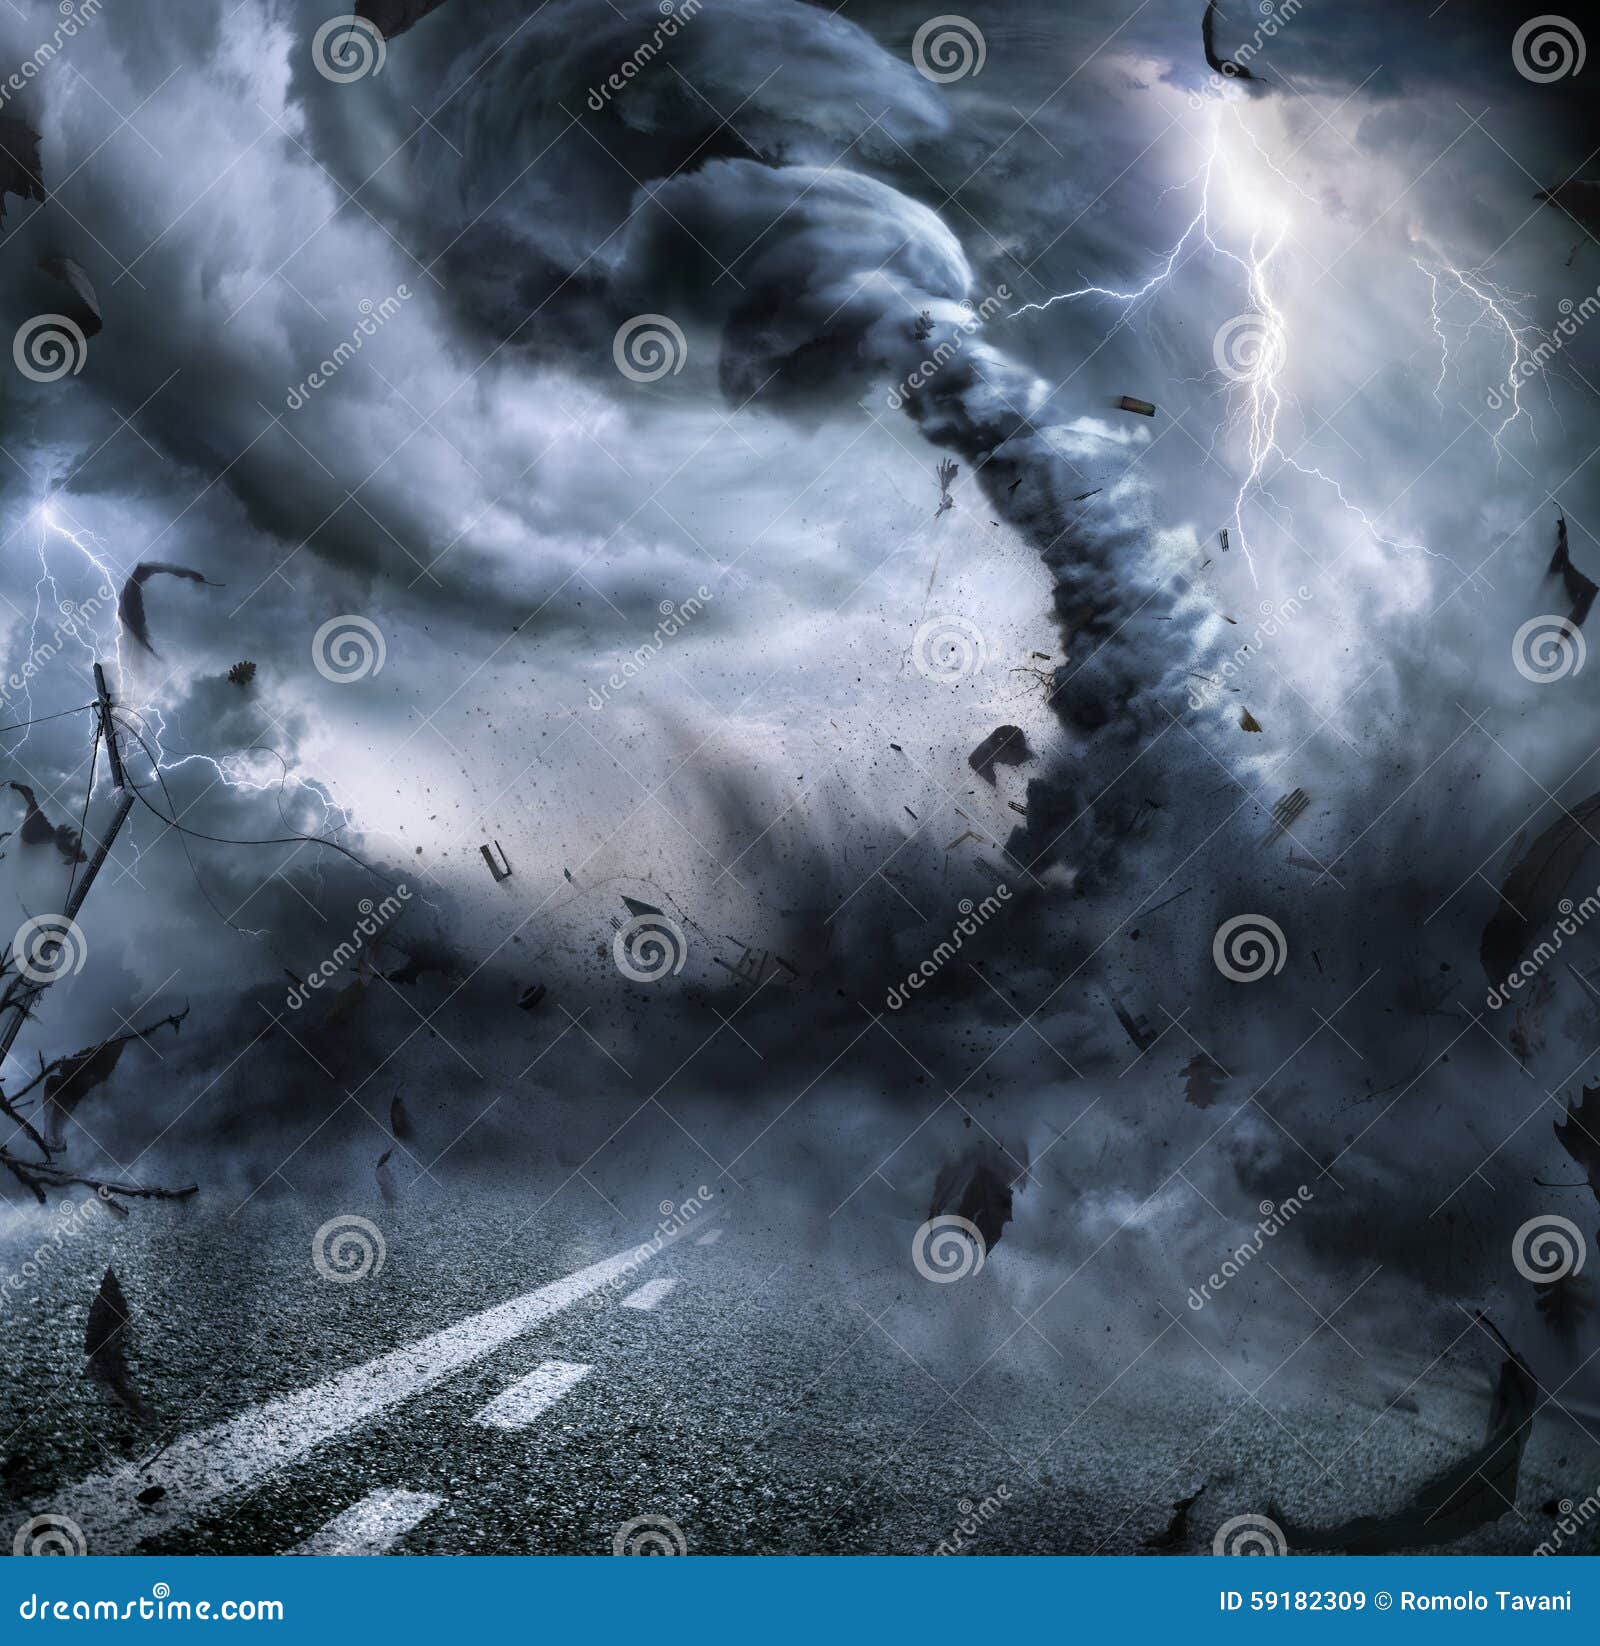 powerful tornado - dramatic destruction